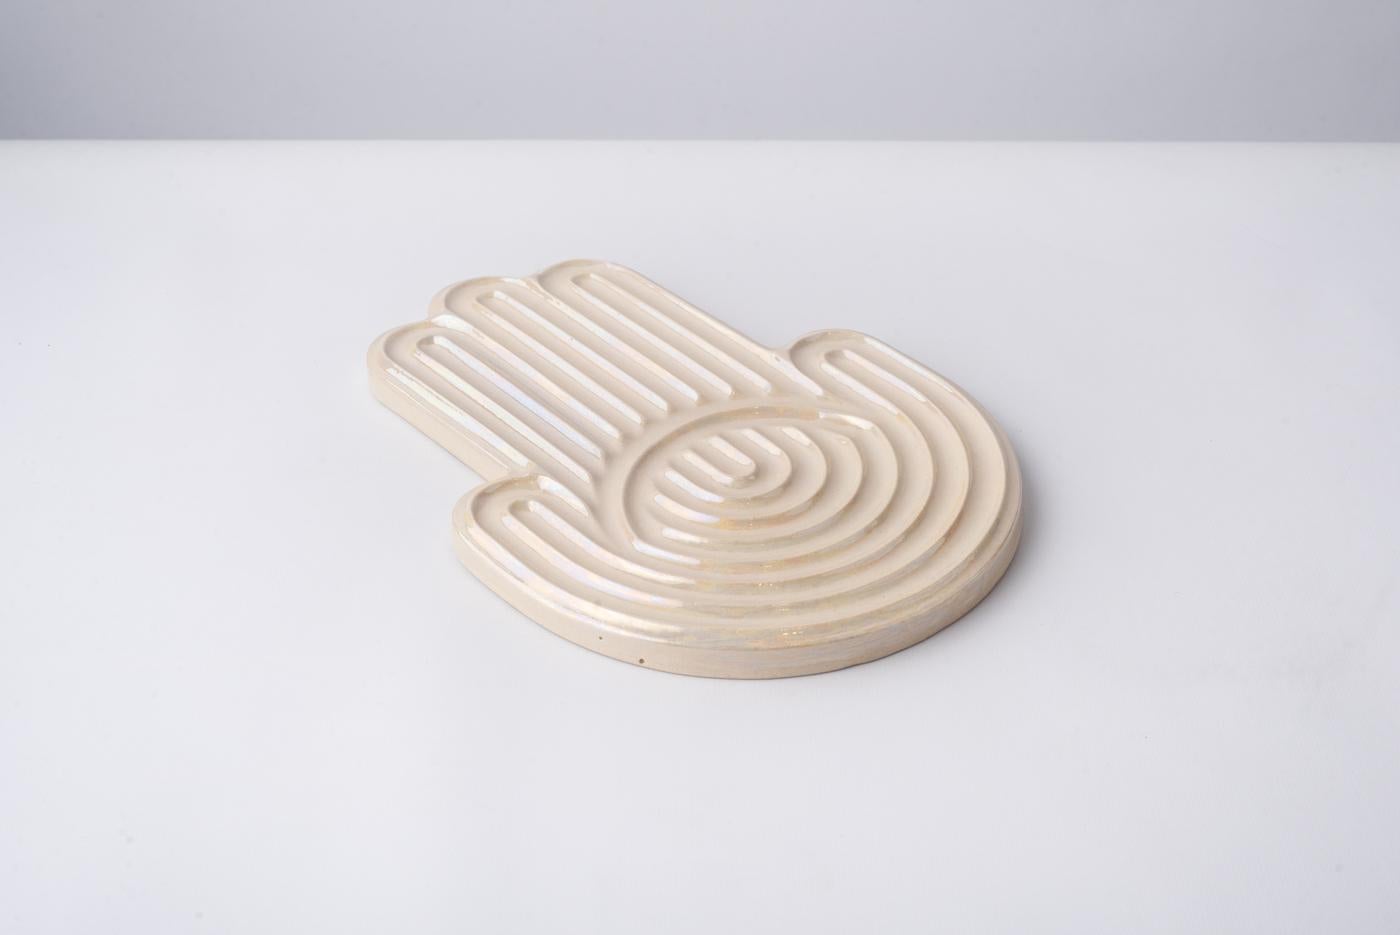 Hamsa Fatima Hand Glazed White High Temperature Ceramic Tray 1